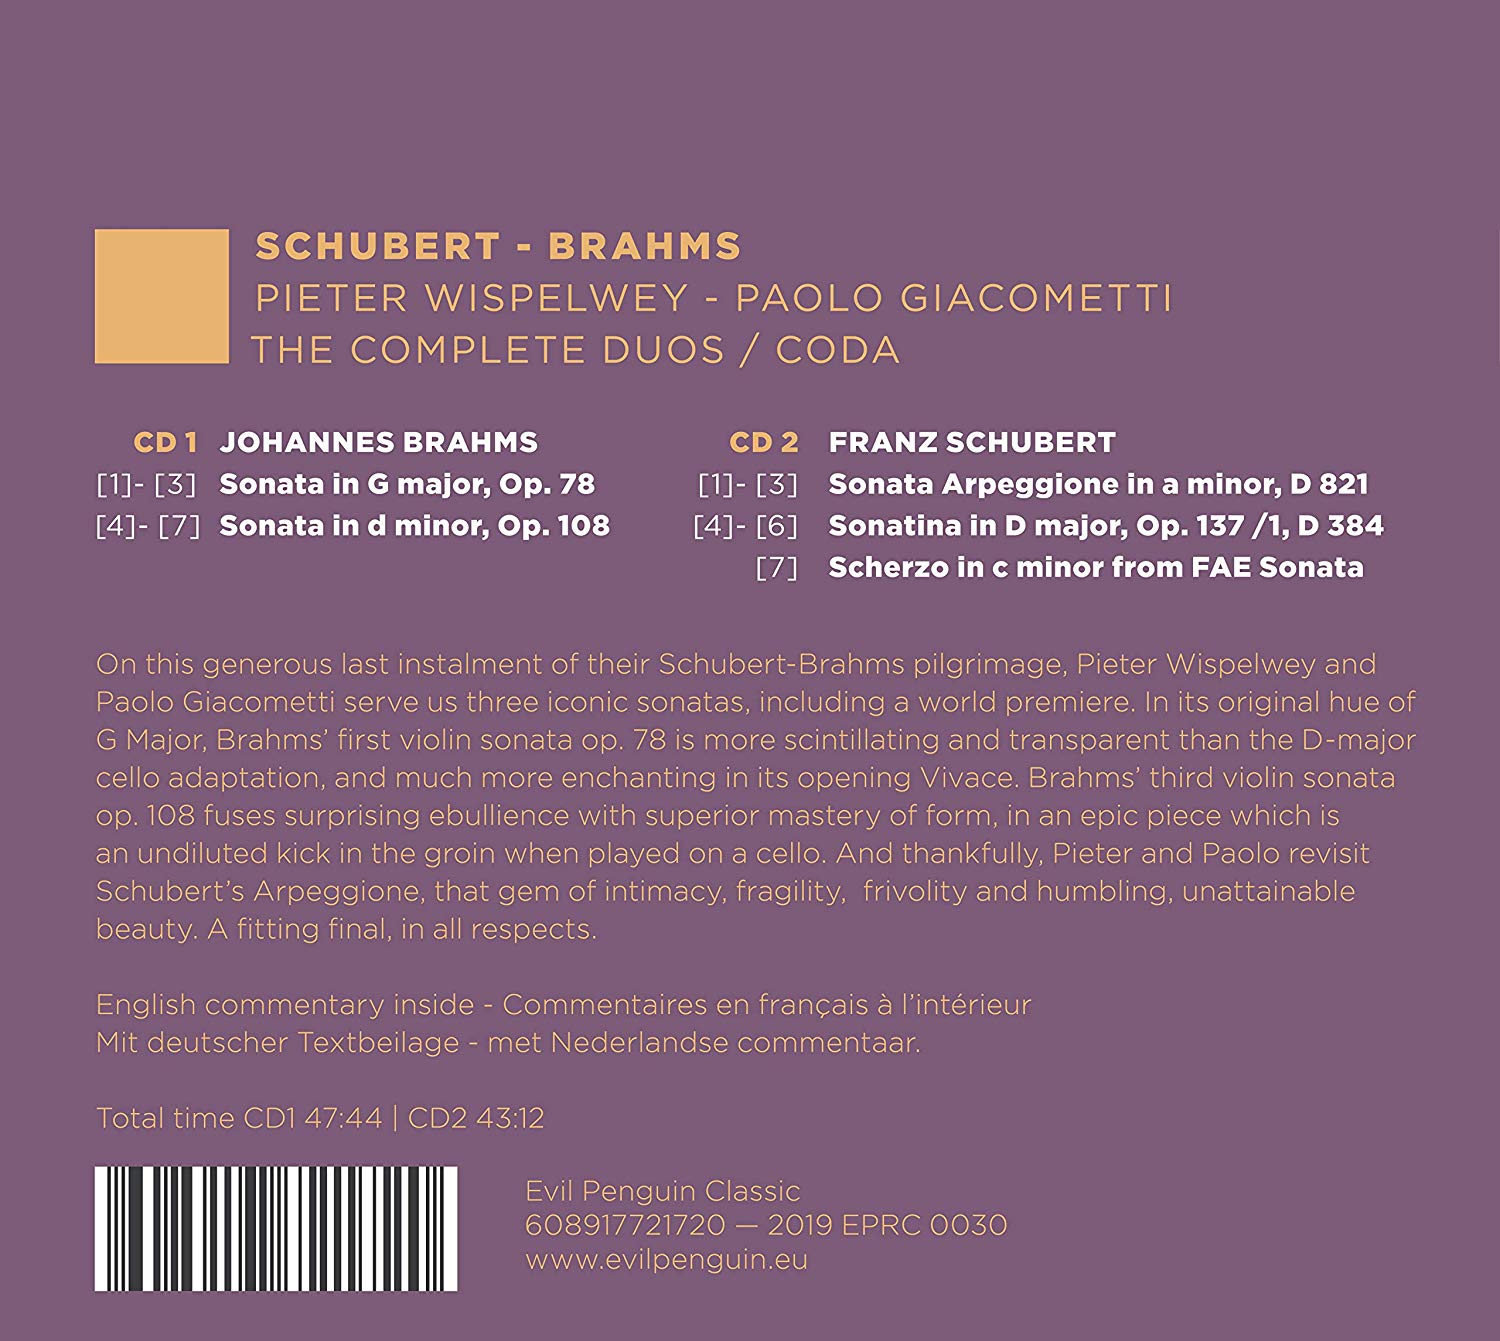 Pieter Wispelwey / Paolo Giacometti 슈베르트 / 브람스: 첼로와 피아노를 위한 작품 전곡 5집